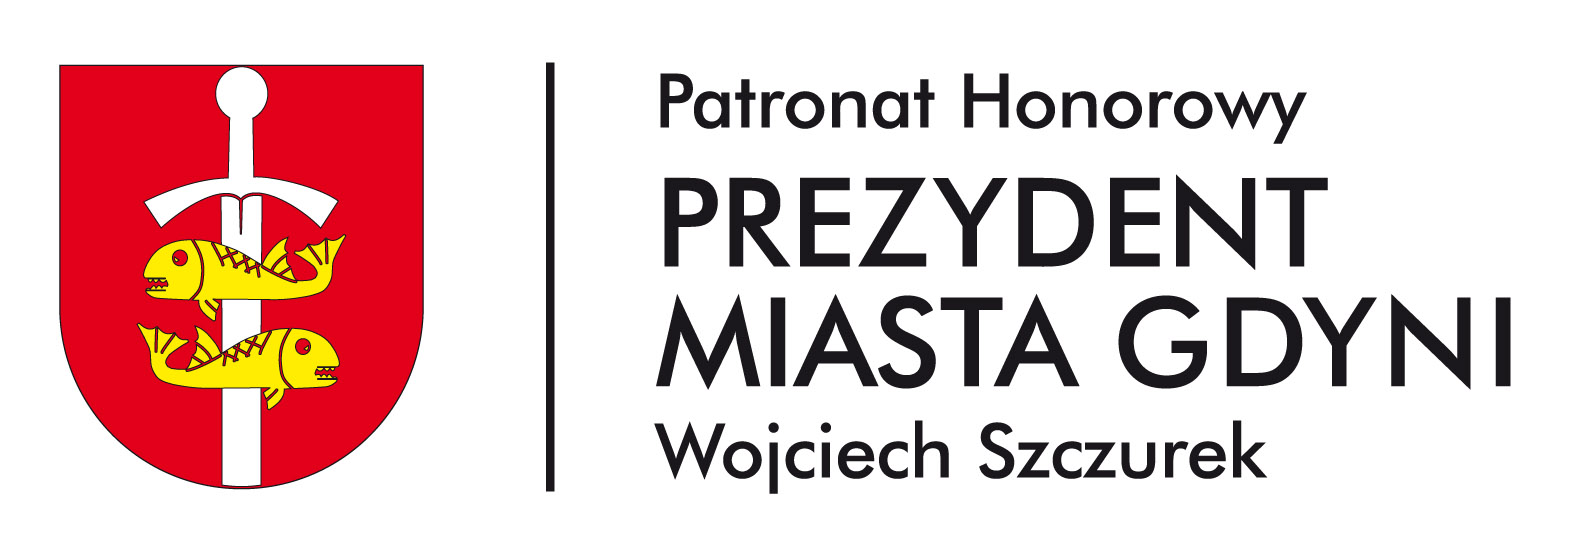 Patronat Honorowy Prezydent Miasta Gdyni